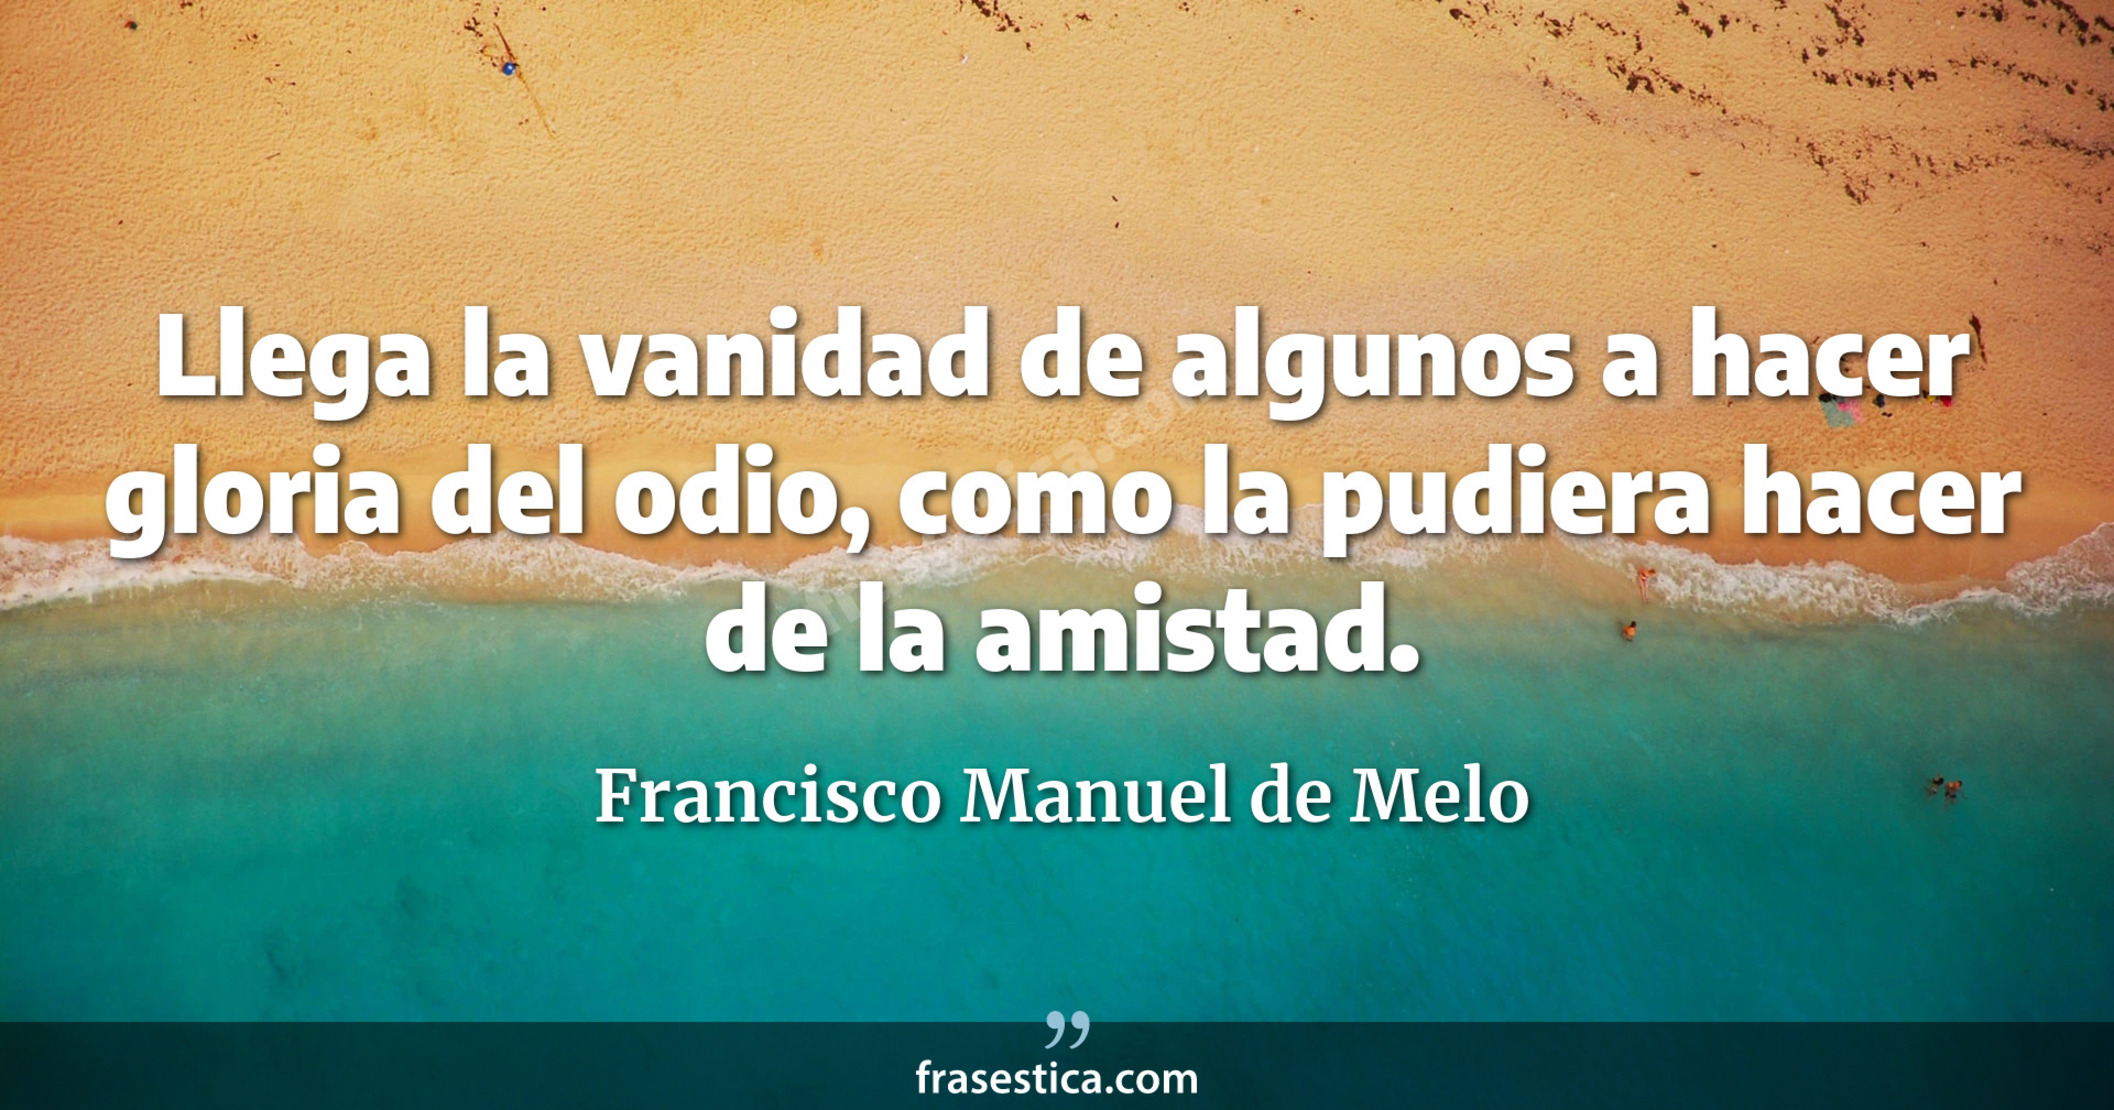 Llega la vanidad de algunos a hacer gloria del odio, como la pudiera hacer de la amistad. - Francisco Manuel de Melo